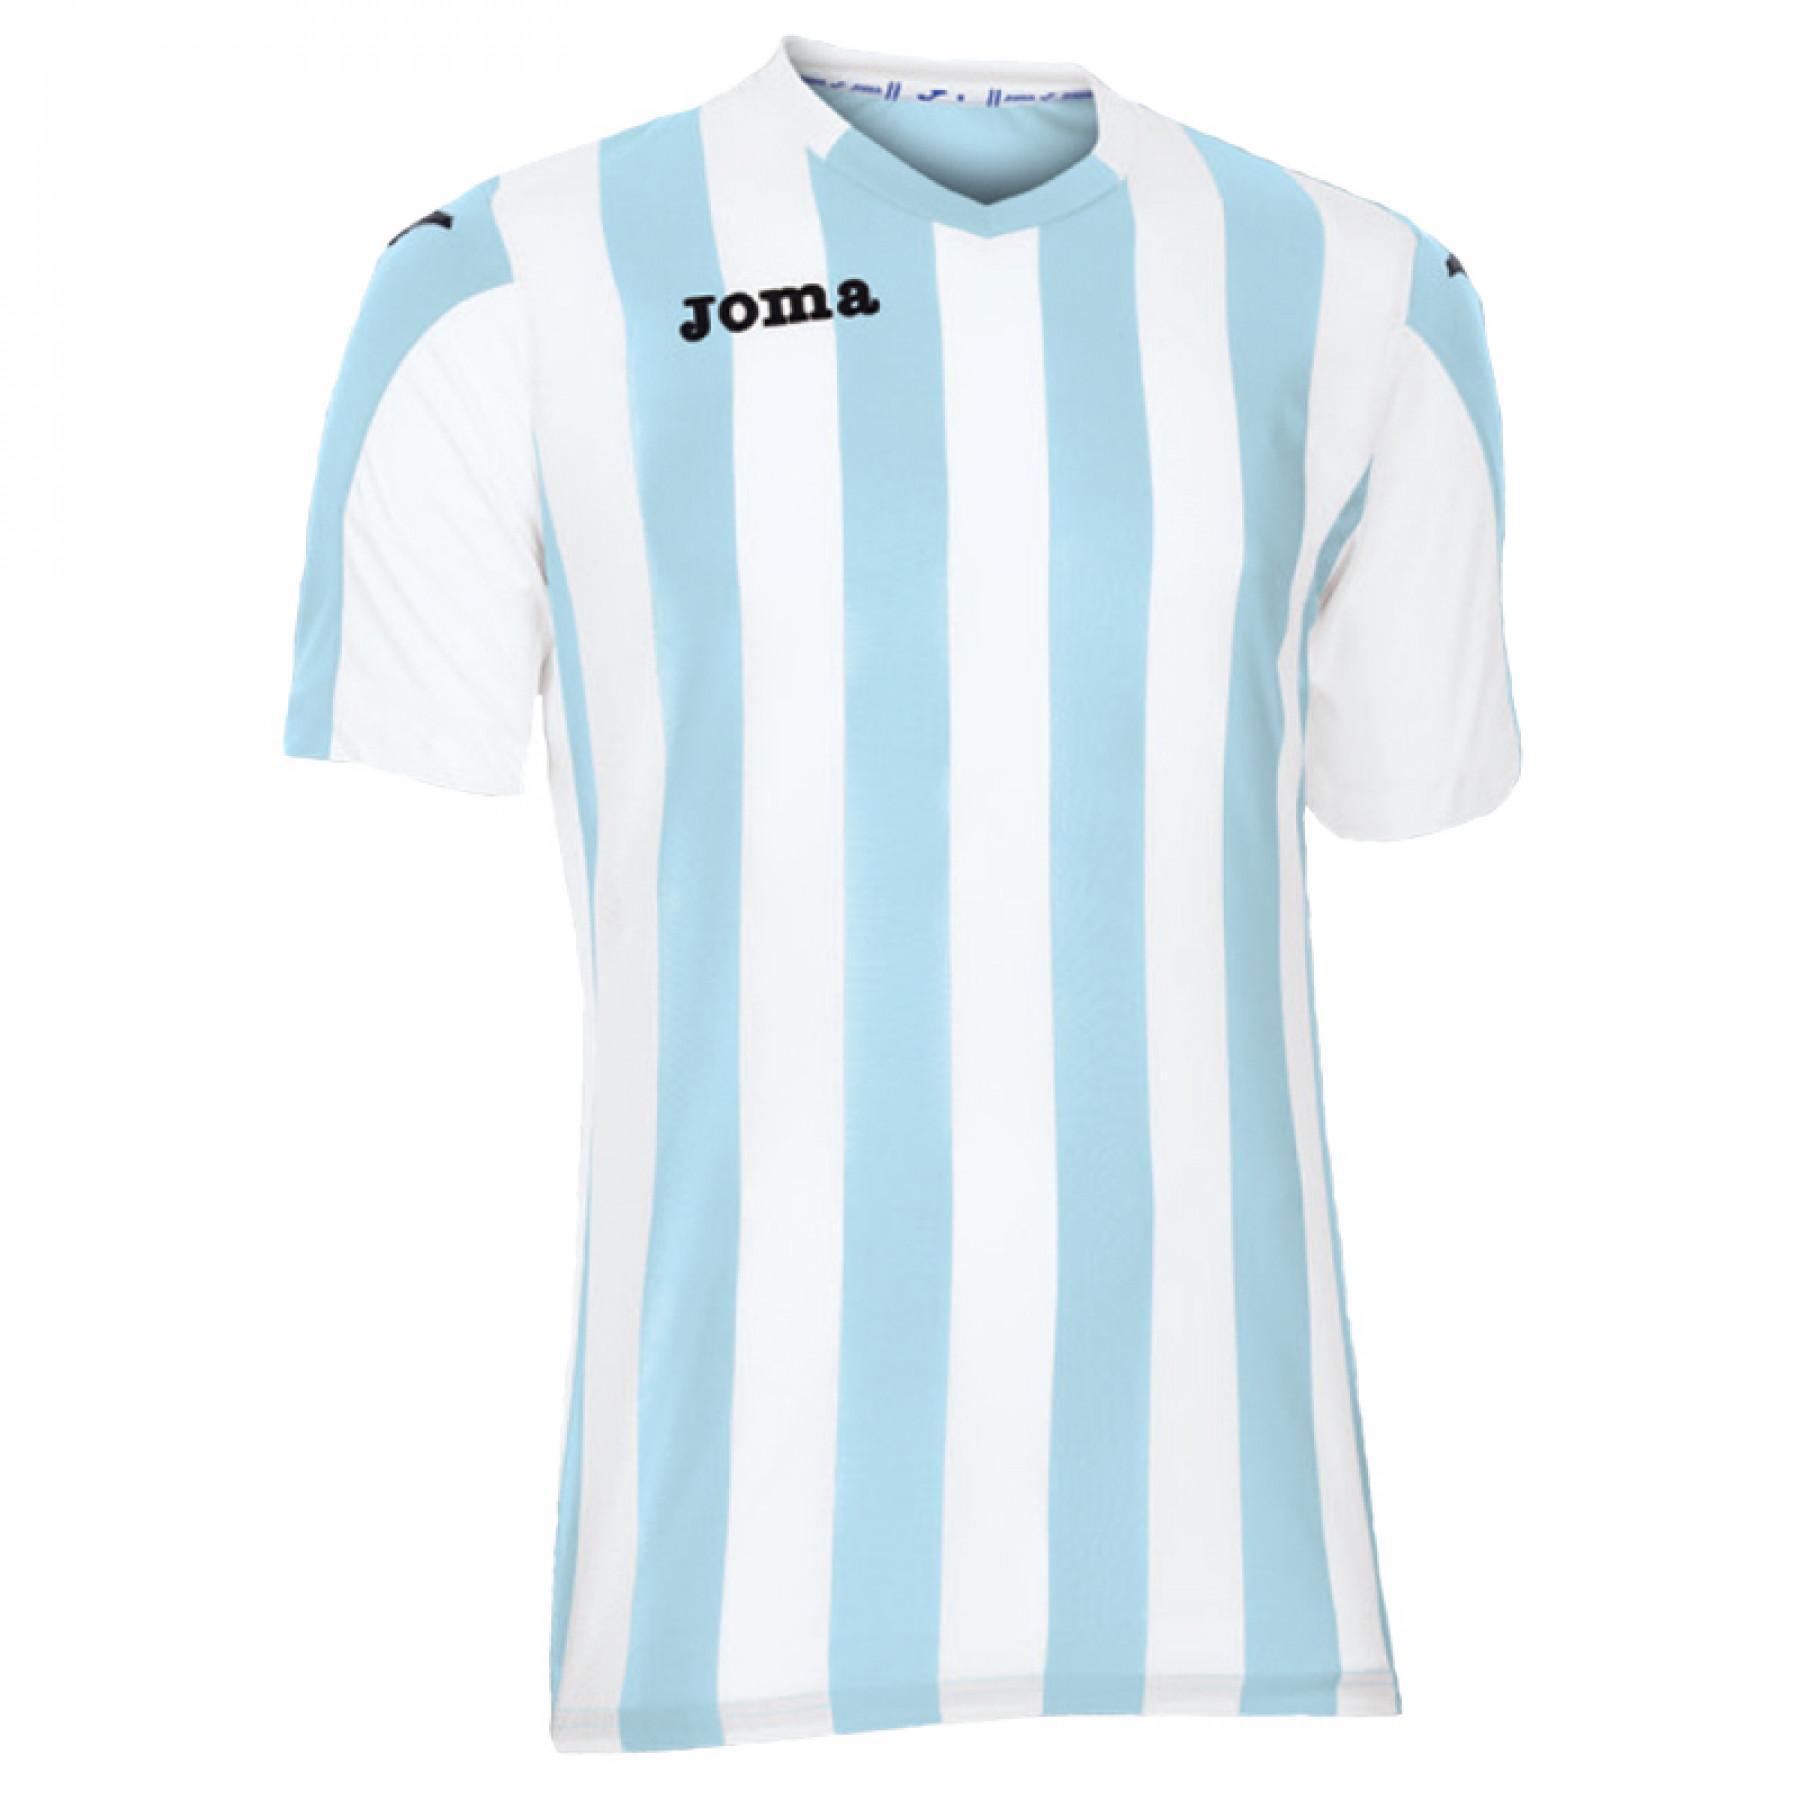 Children's jersey Joma Copa